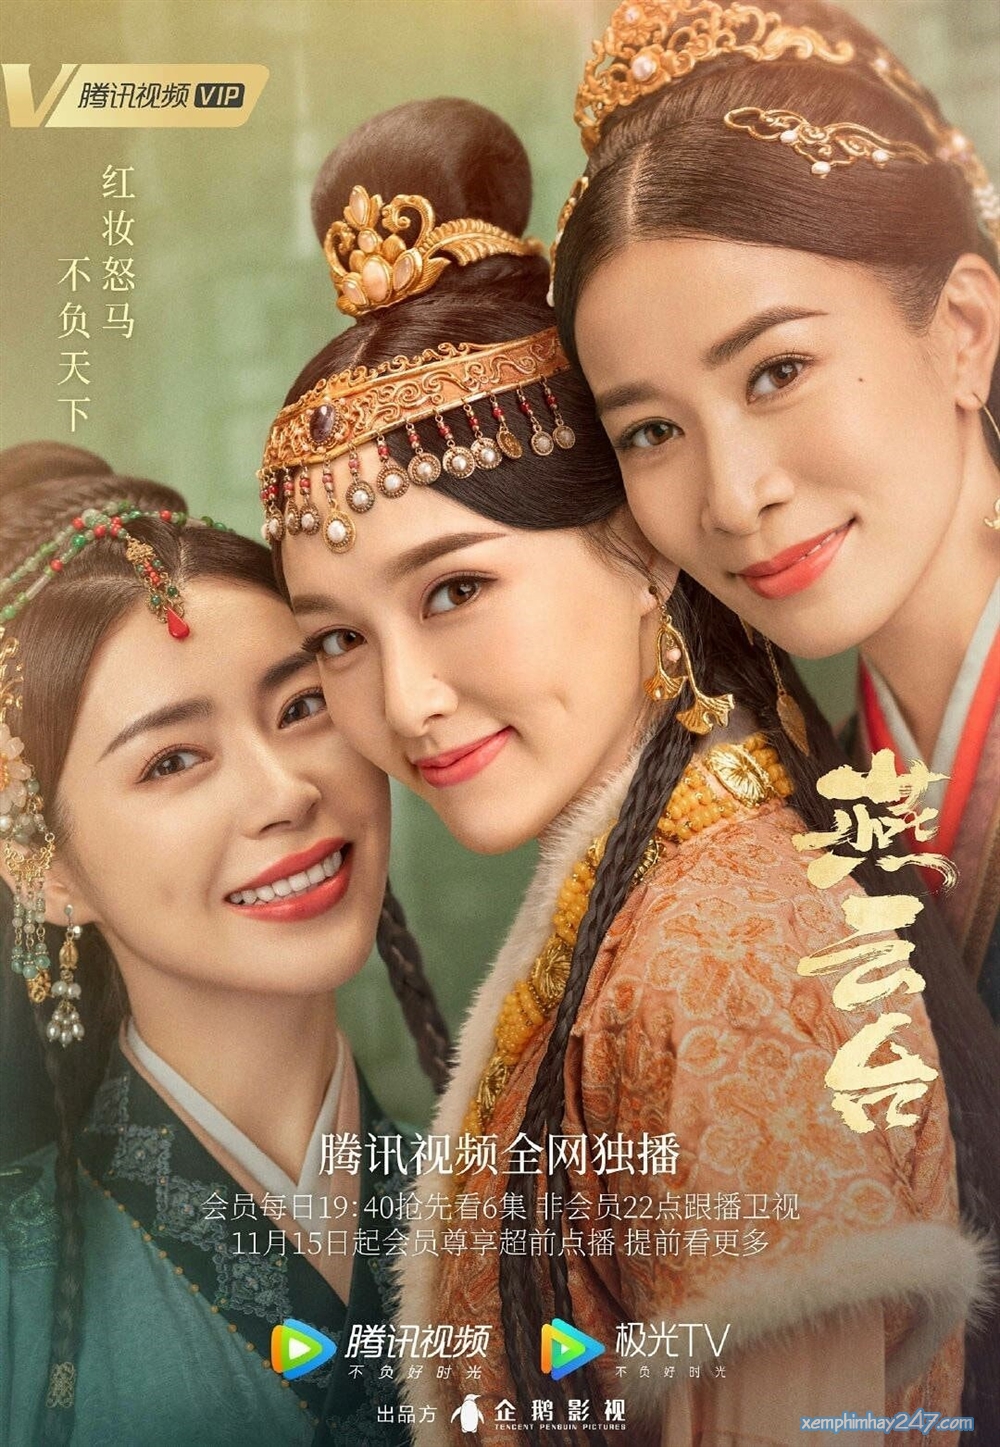 Phim mới của Đường Yên: Yến vân đài - The Legend of Xiao Chuo (2020)